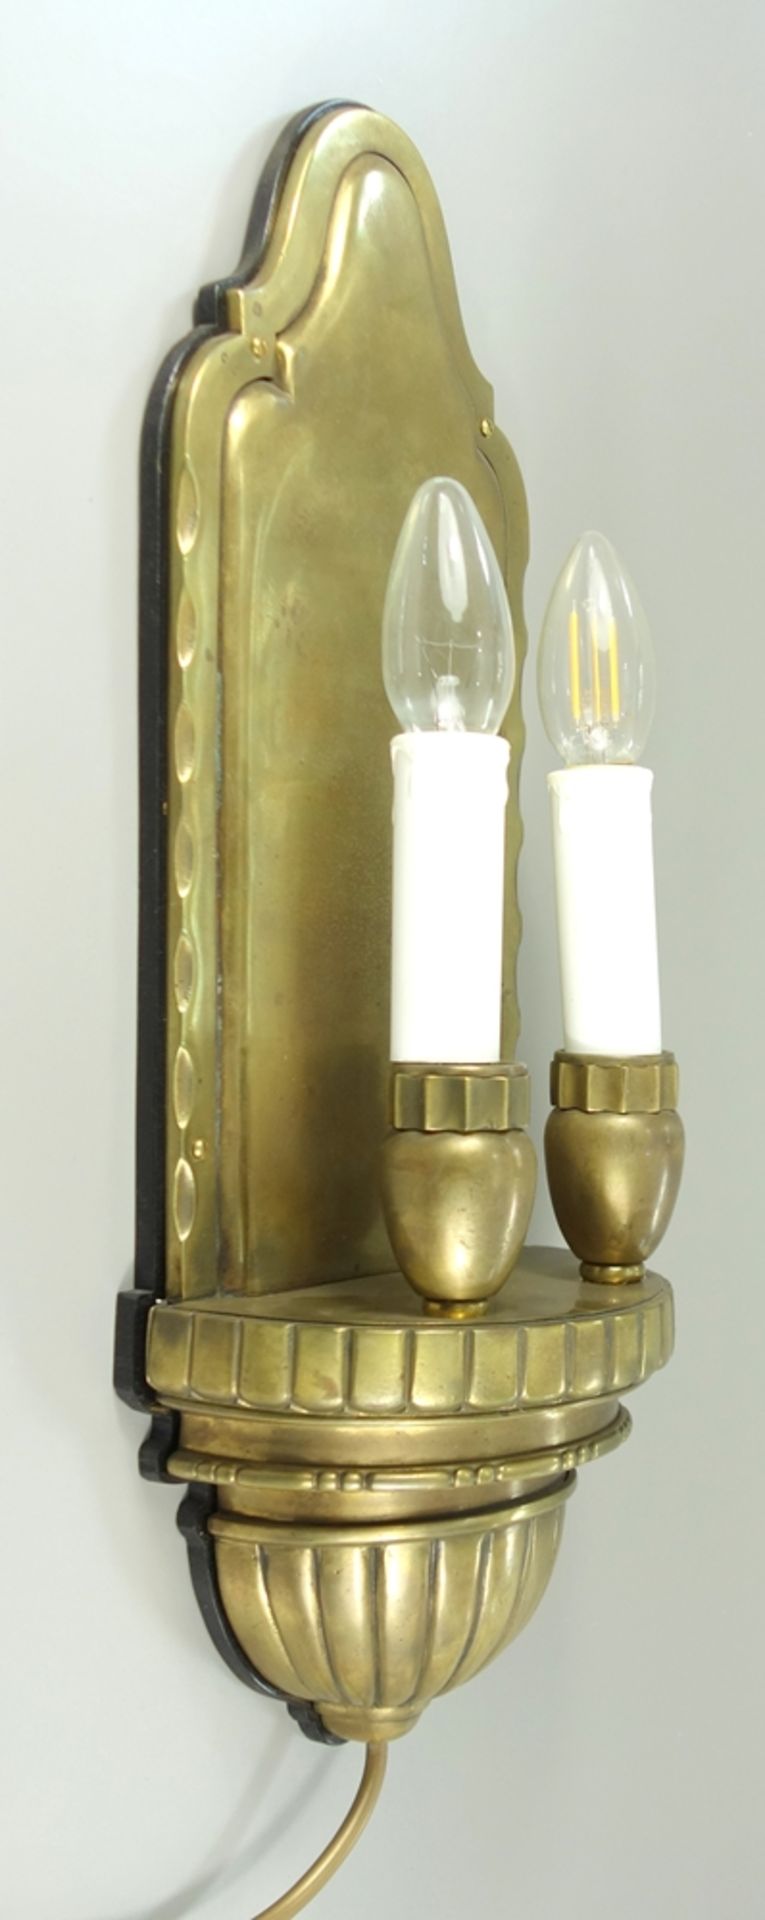 Paar große Wandlampen, 1920er Jahre, Messing, jeweils zweiflammig, zwei Kerzenfassungen auf - Bild 2 aus 2